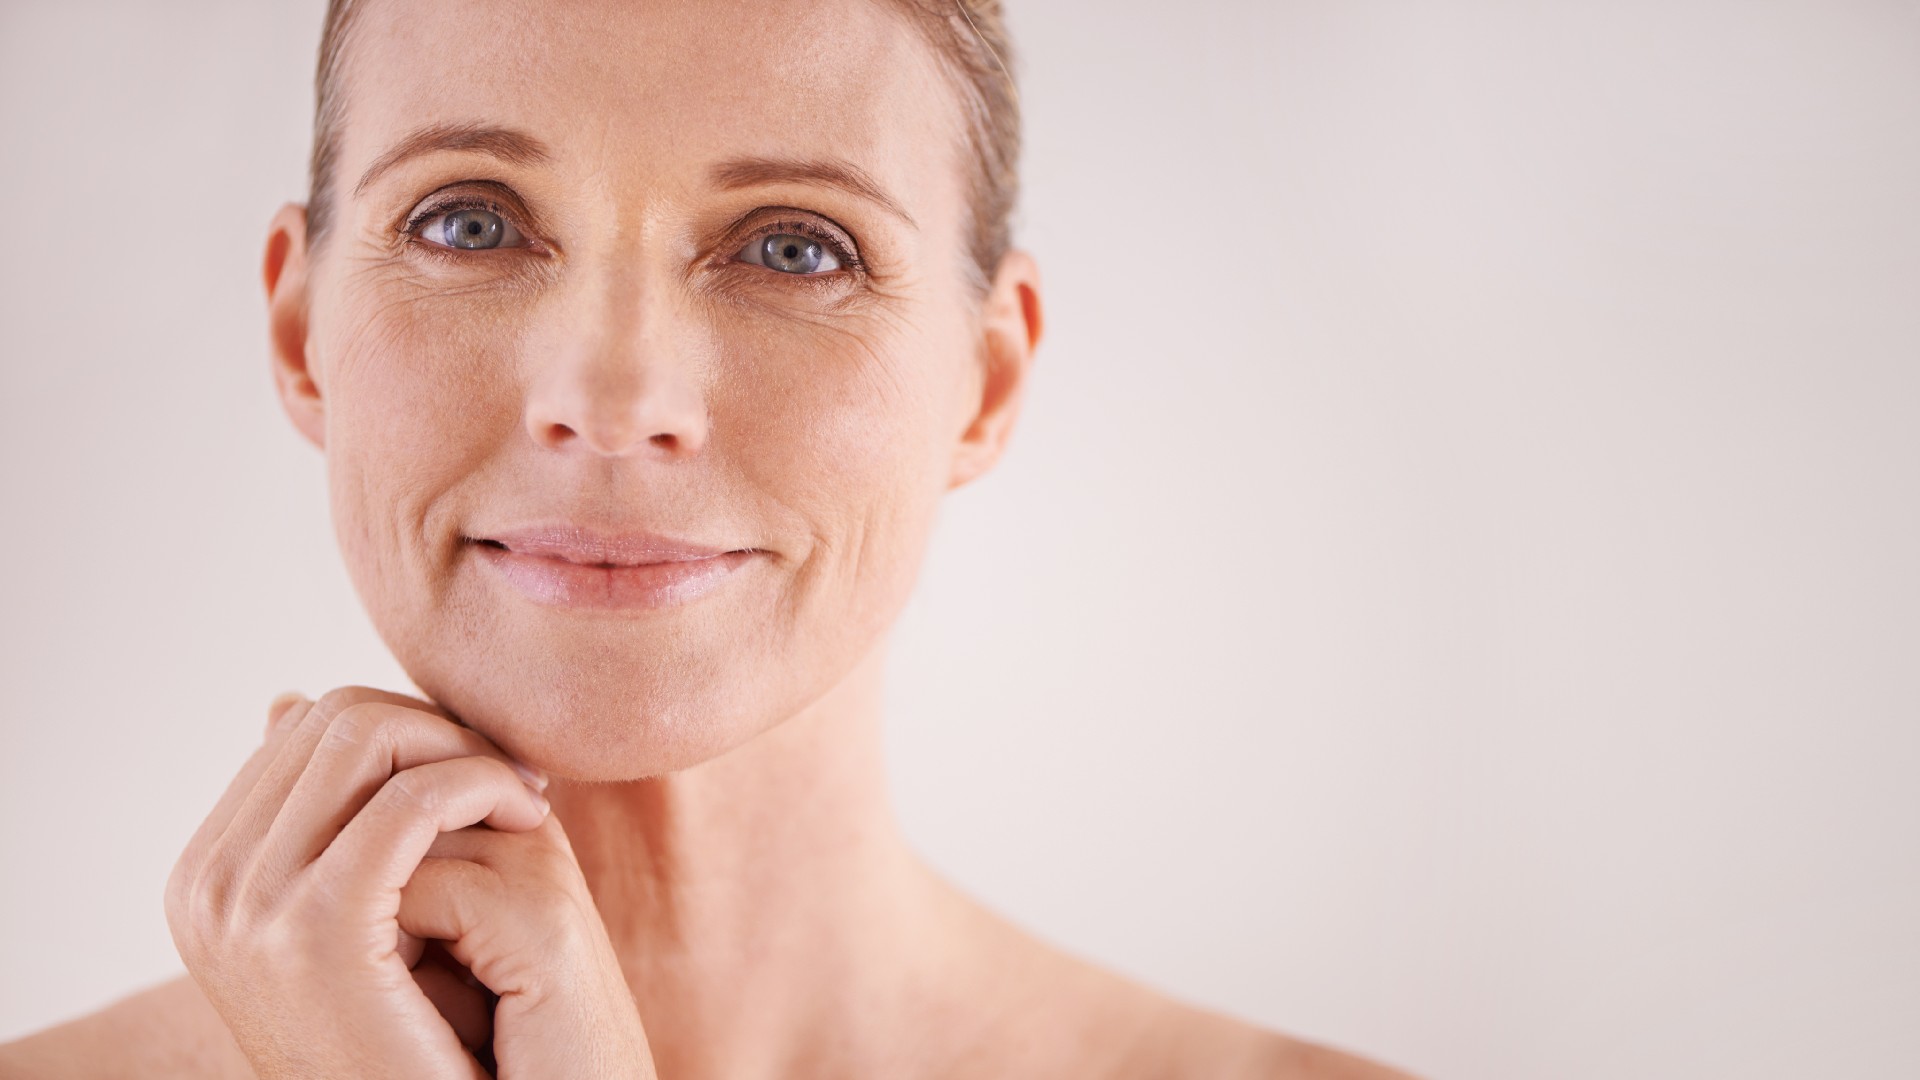 When Do Wrinkles Start? 5 Daily Habits to Prevent Wrinkles - Better Off